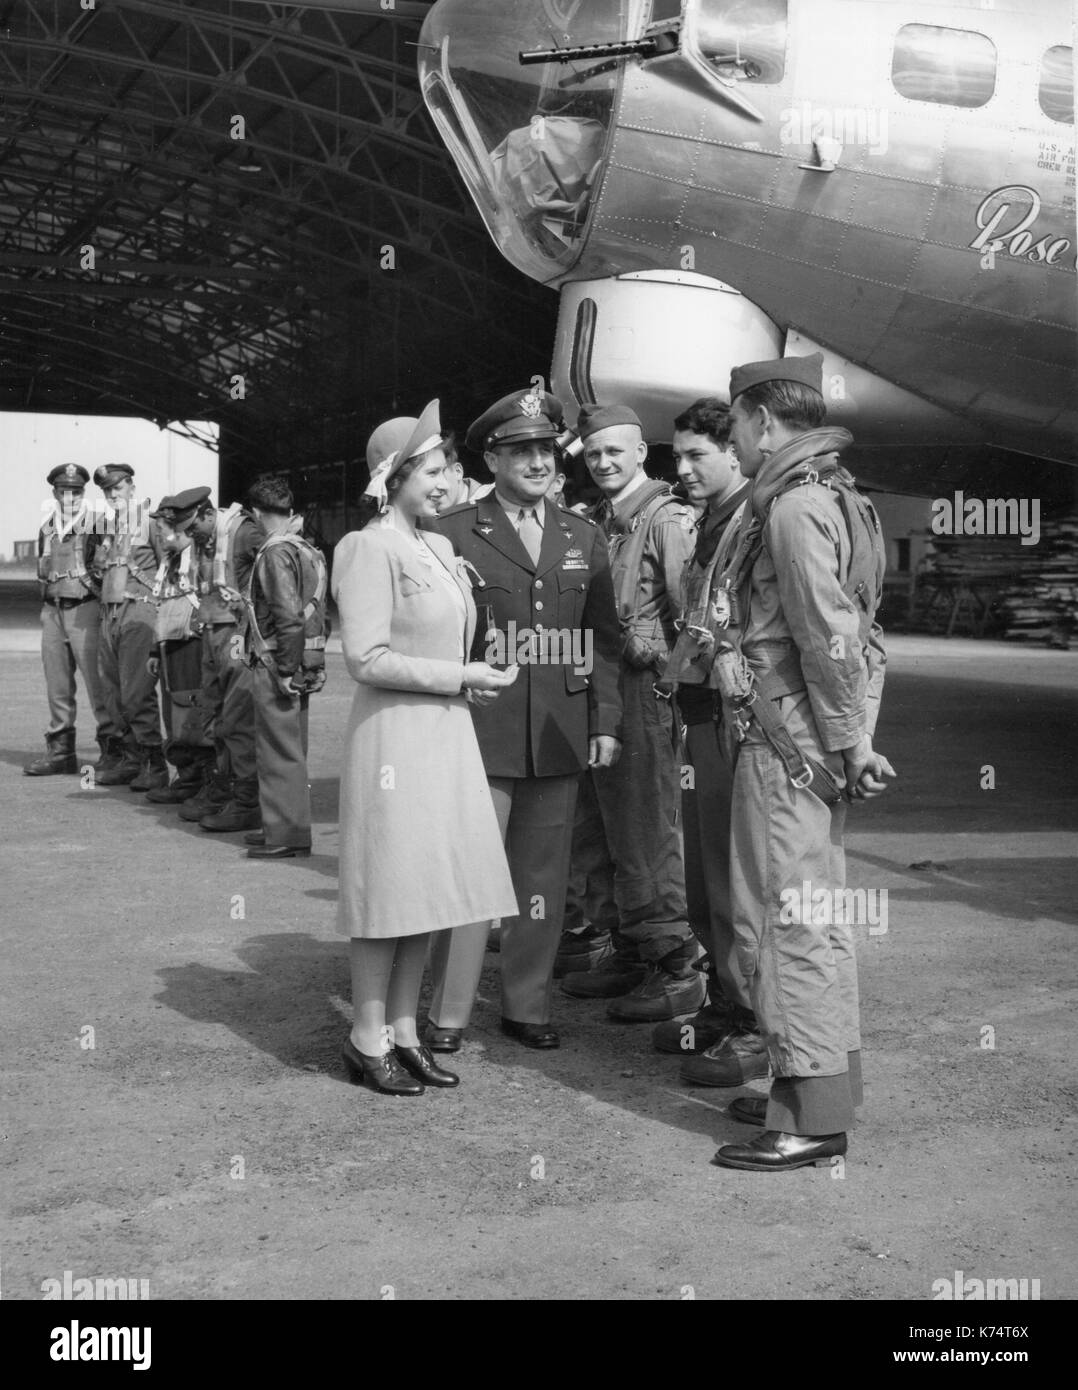 La princesse Elizabeth chat avec de l'équipage au baptême du Boeing B-17 Flying Fortress 'Rose of York' à une base située quelque part en Angleterre, Angleterre, 7/6/1944. Banque D'Images